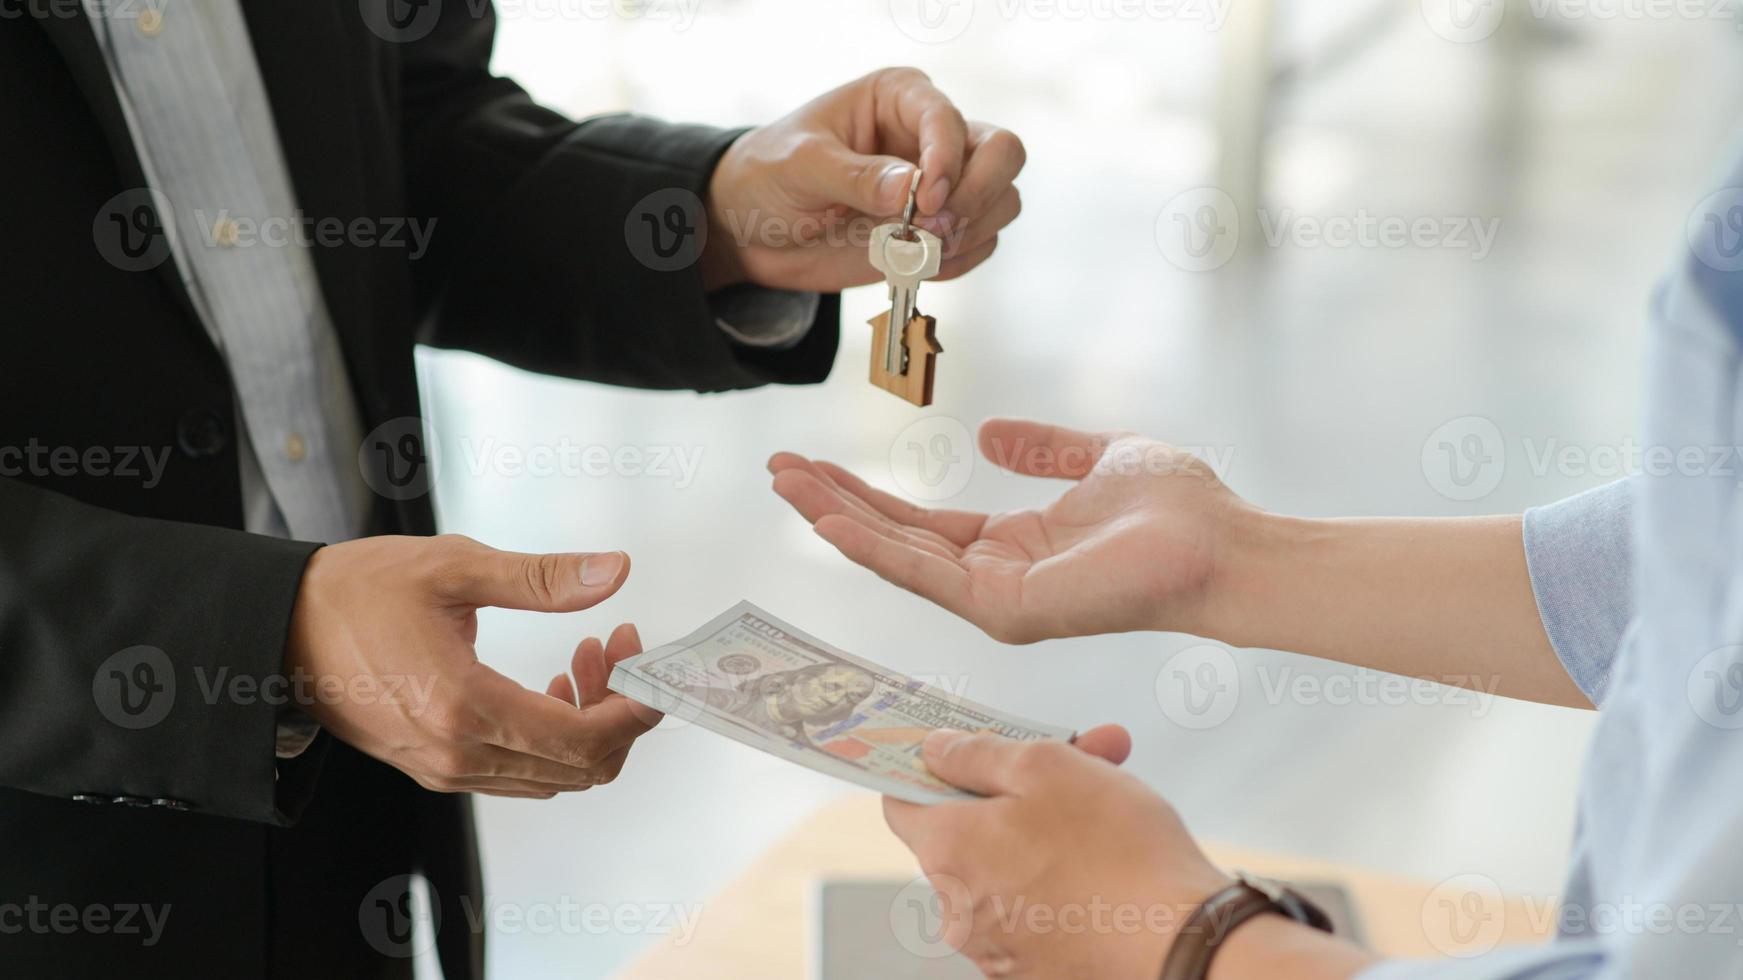 Kunden und Vermieter tauschen Geld und Schlüssel aus, nachdem sie sich bereit erklärt haben, ein Haus zu kaufen. foto